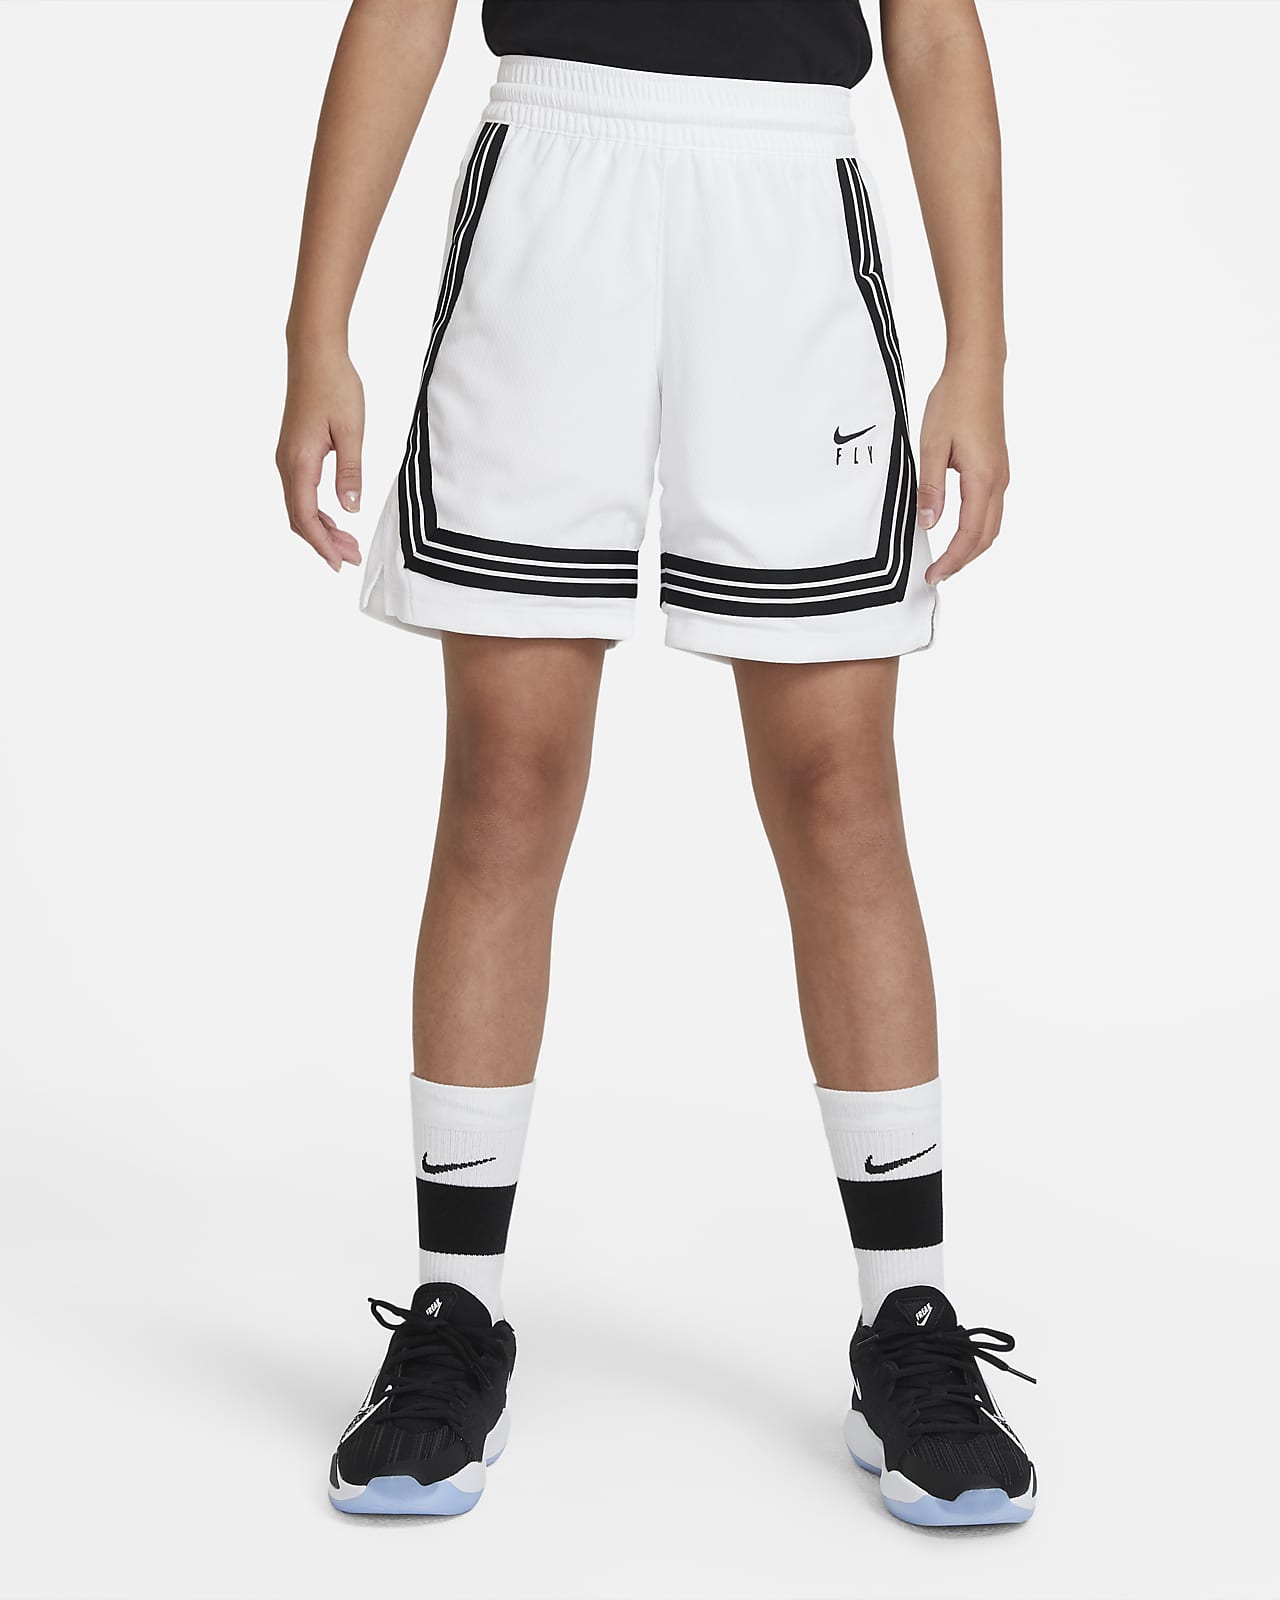 กางเกงบาสเก็ตบอลขาสั้นเด็กโต (หญิง) Nike Fly Crossover